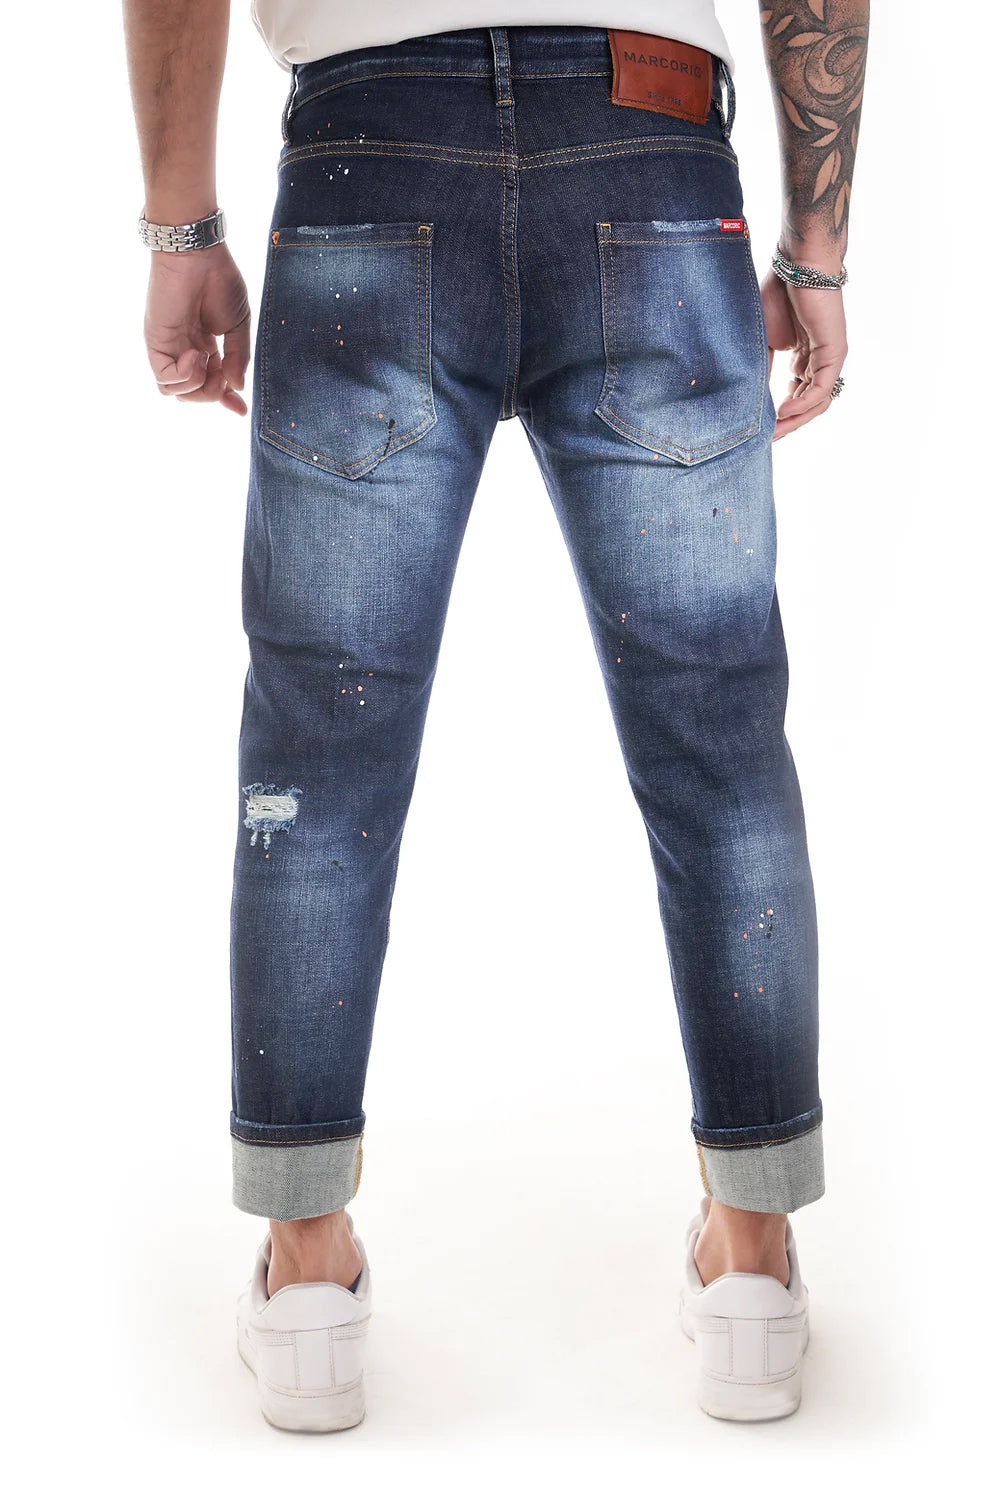 Marcoric Jeans Model E 2272